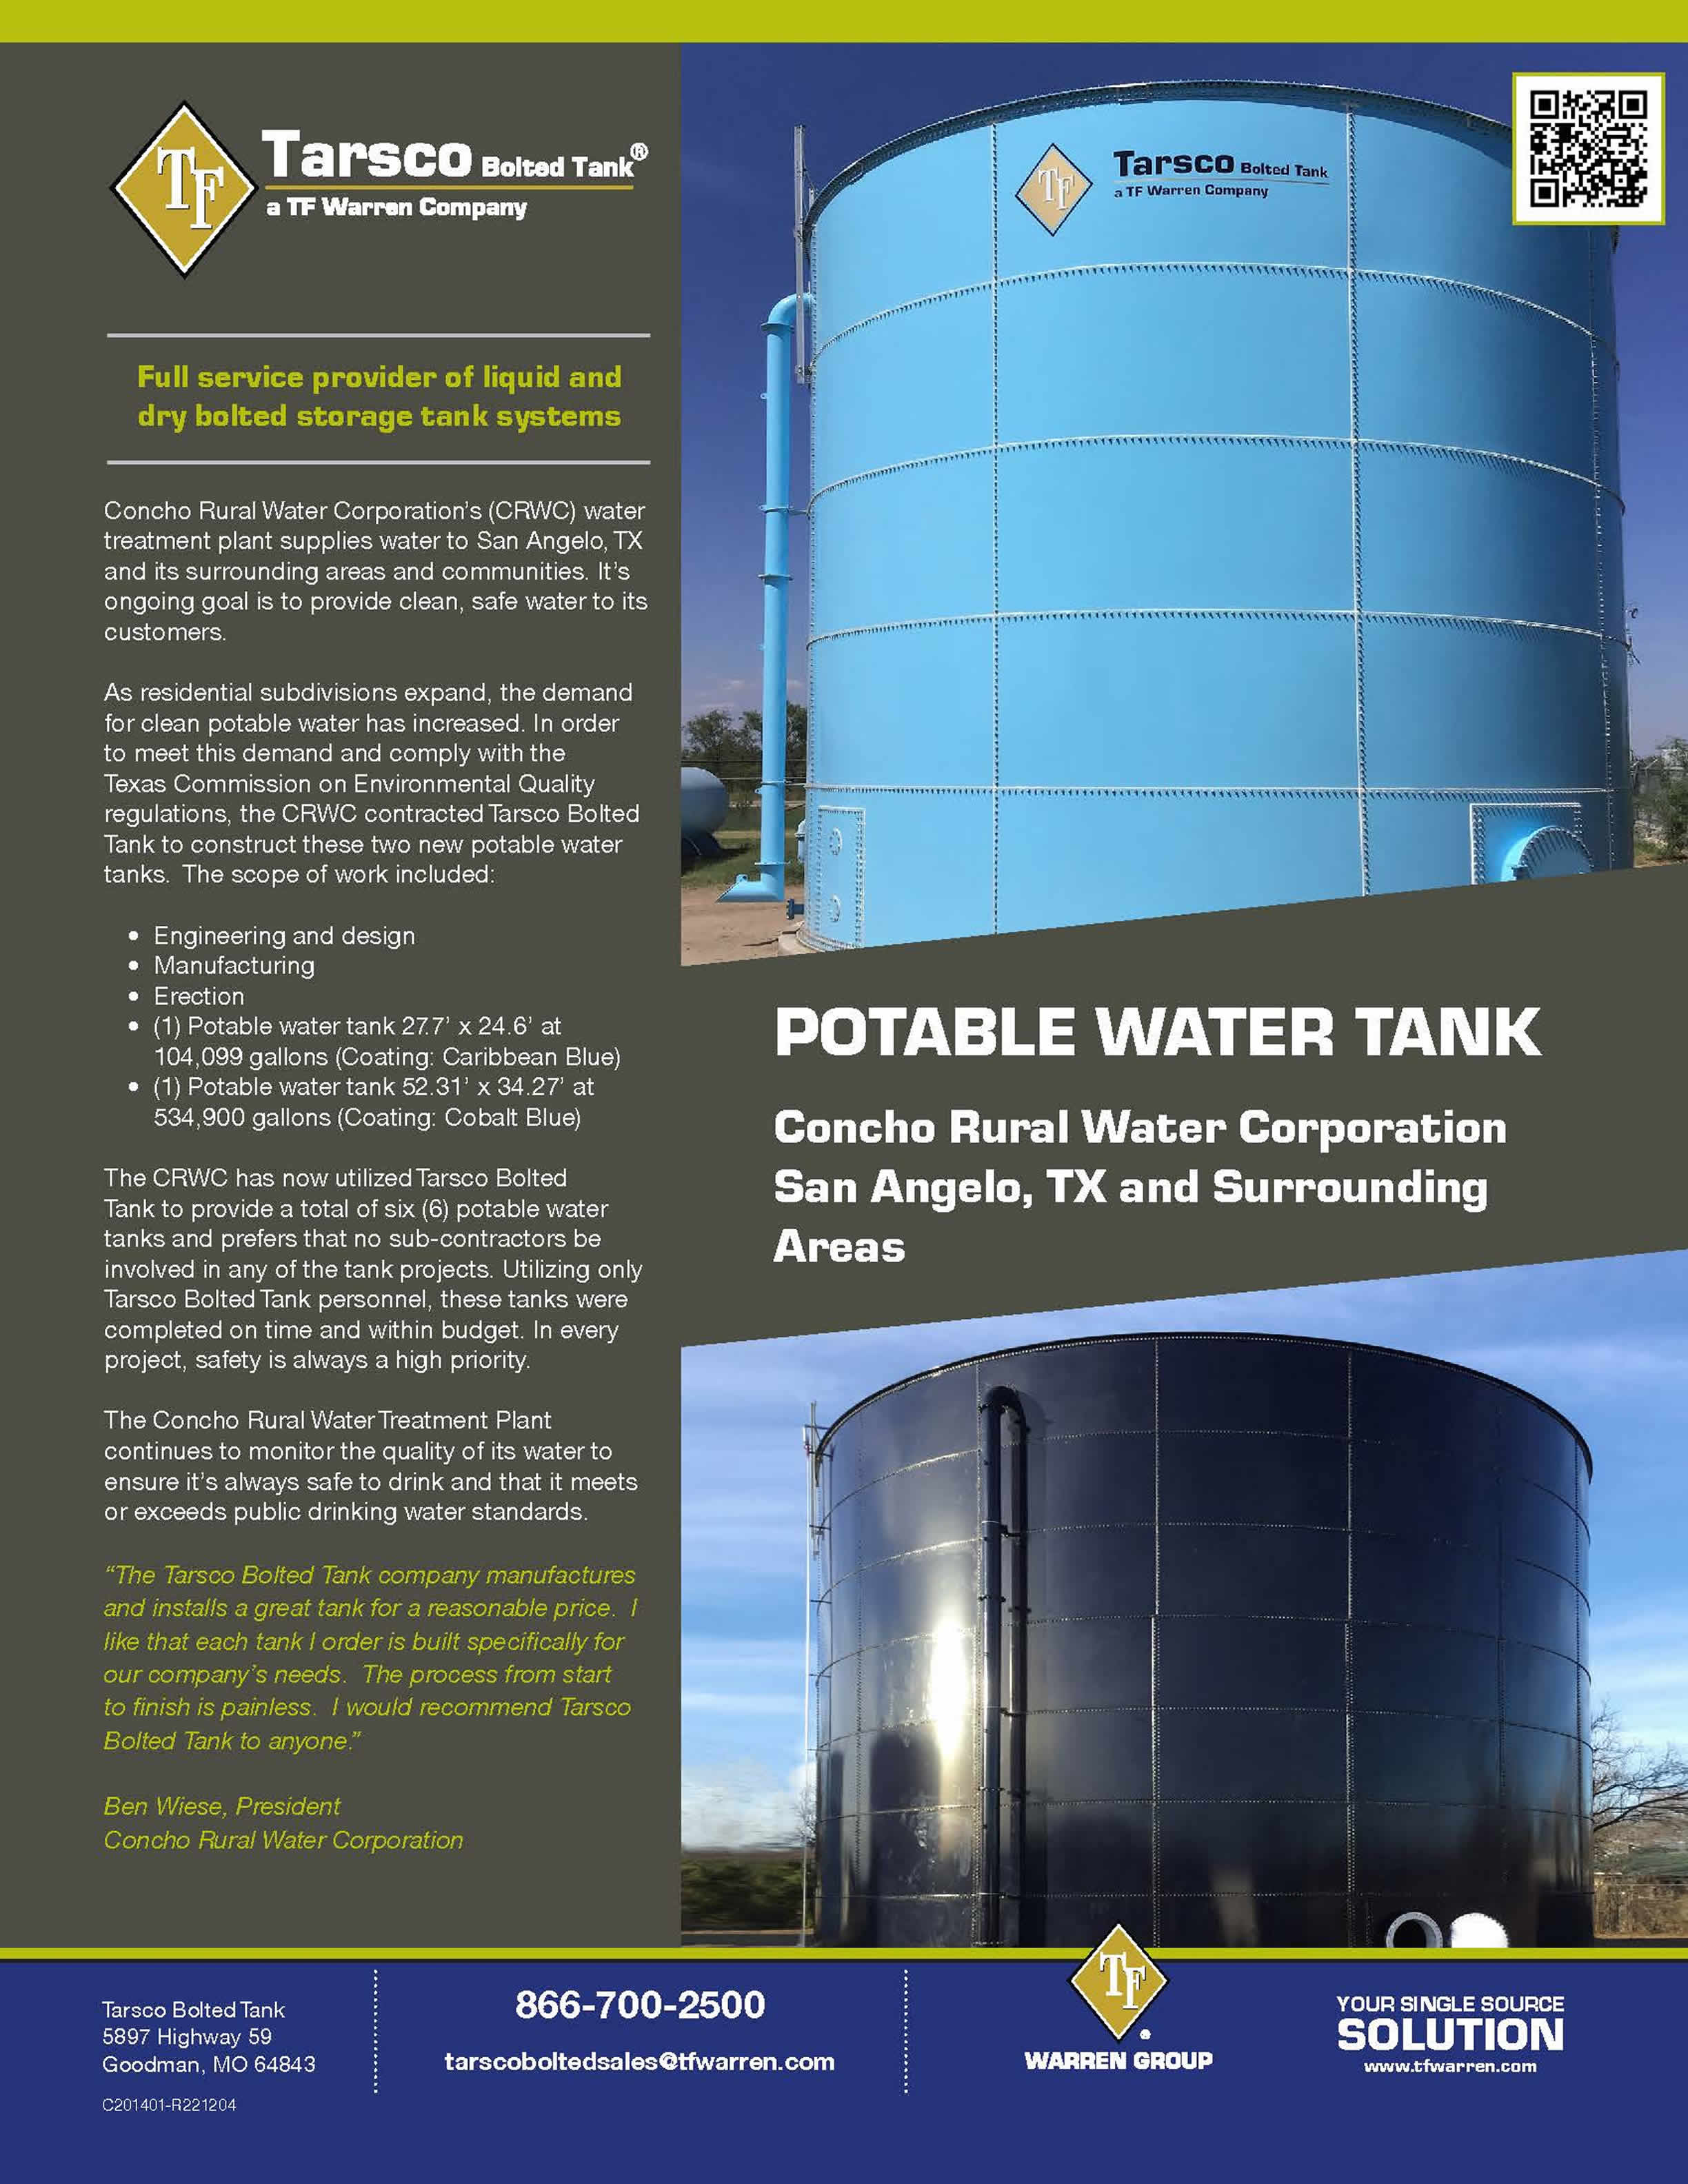 Potable Water Tank, San Angelo, TX